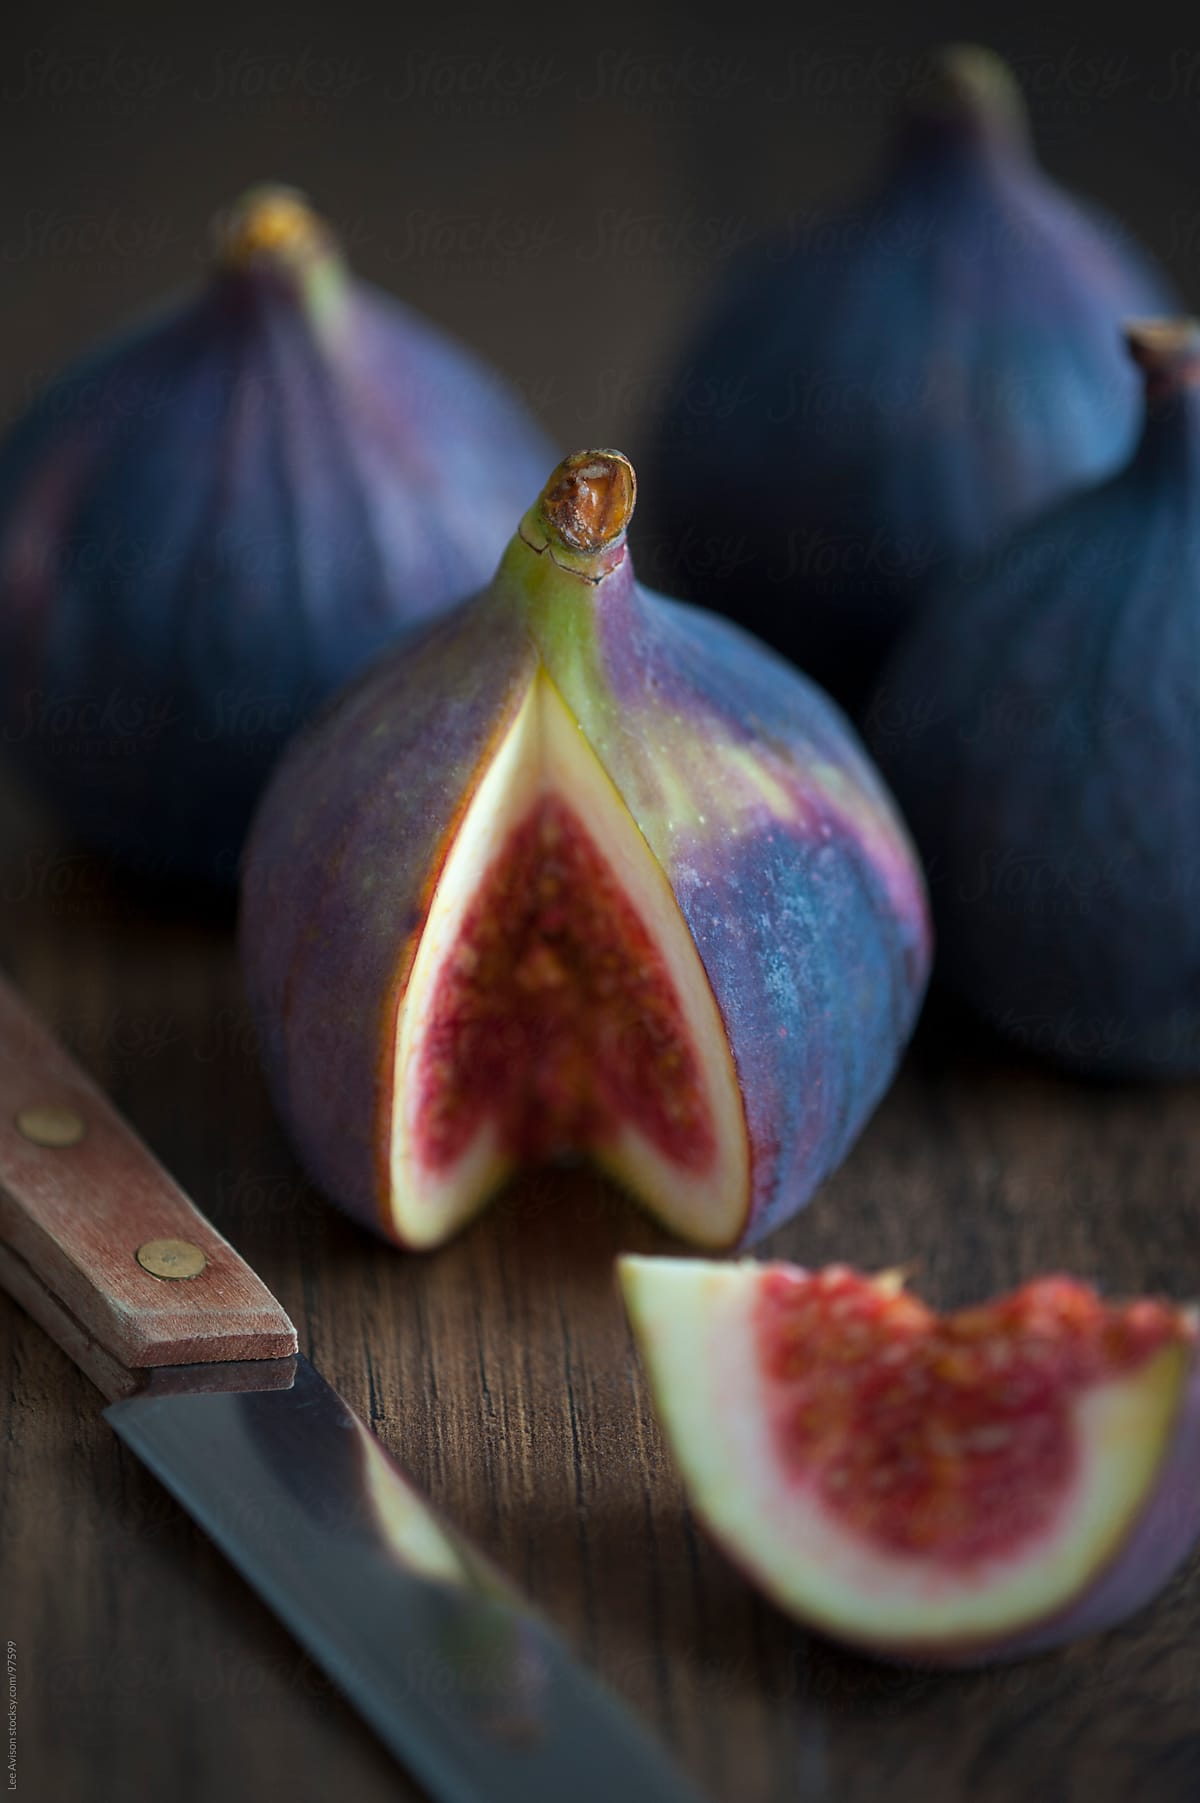 fresh figs close up